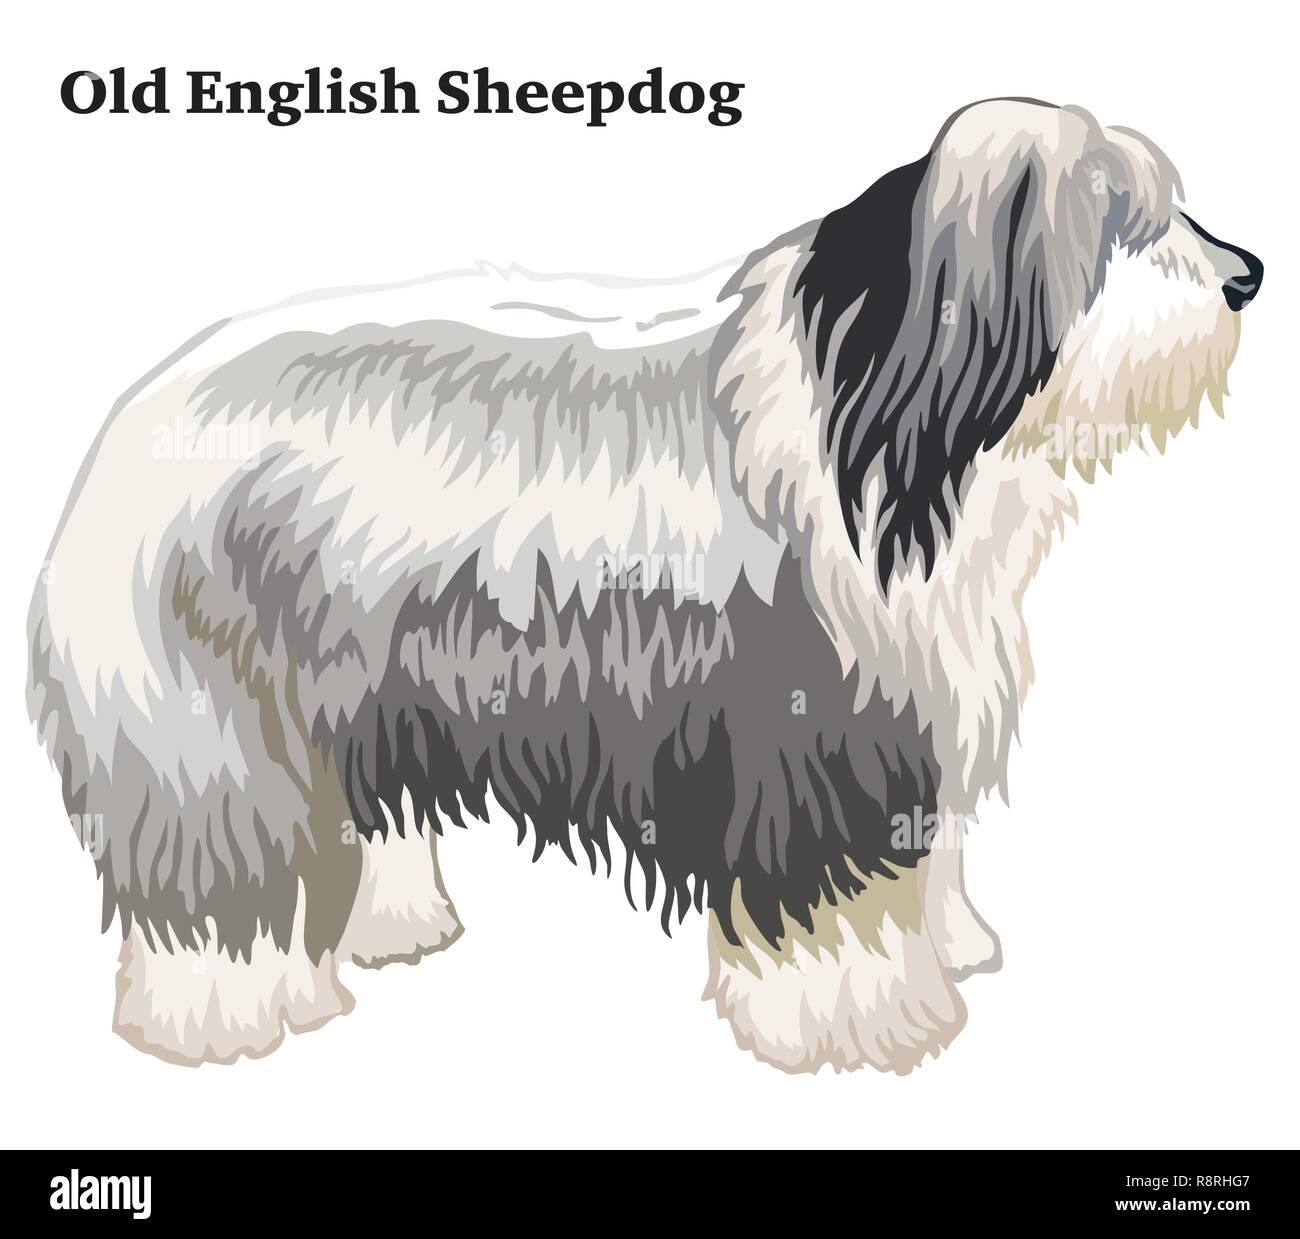 Old English Sheepdog Isolated On White Background Banco de Imagens Royalty  Free, Ilustrações, Imagens e Banco de Imagens. Image 36435706.